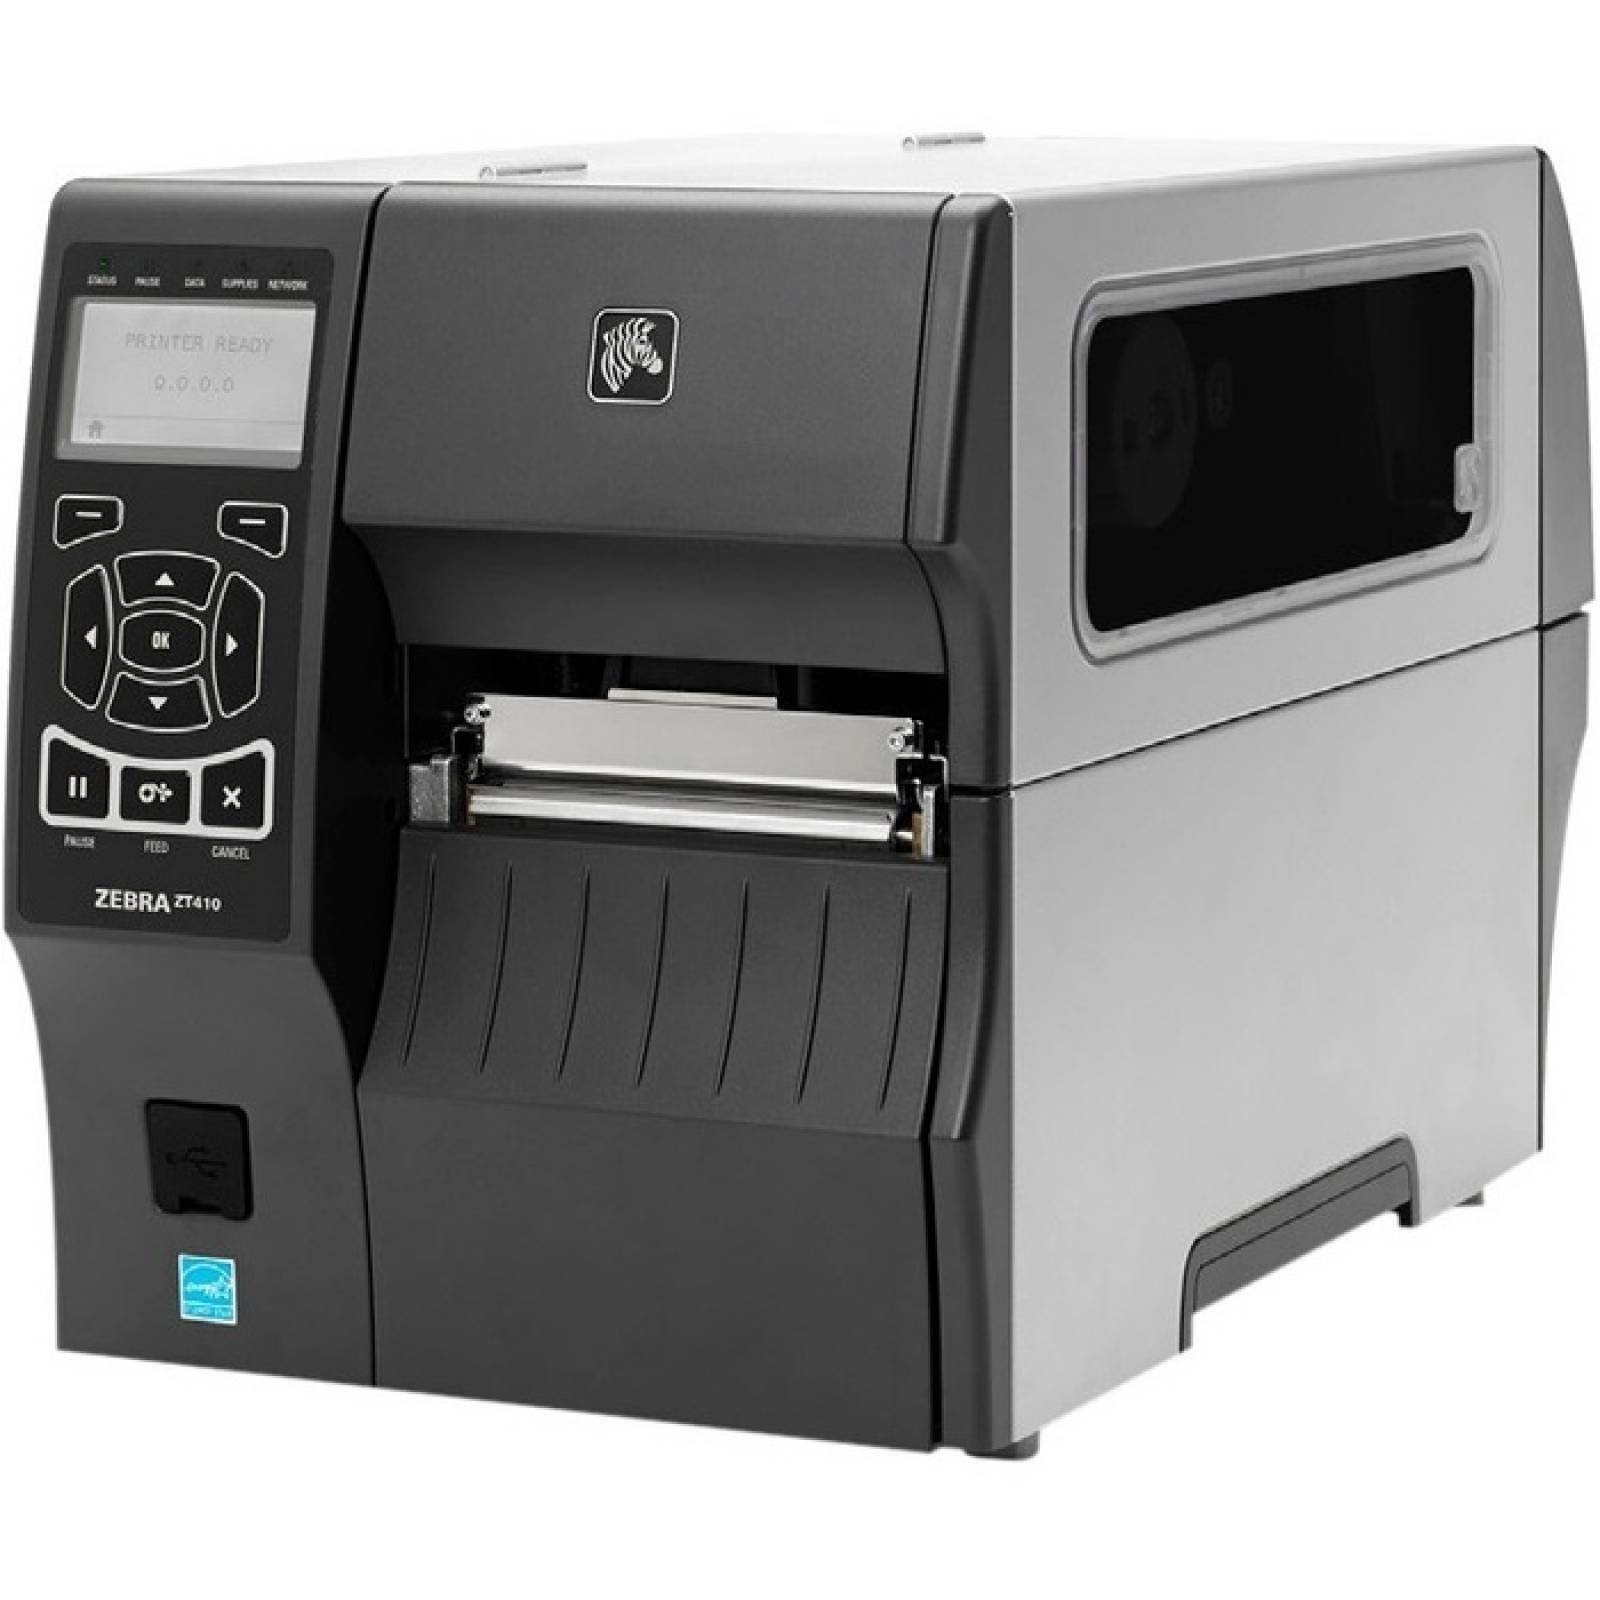 Impresora de transferencia trmica  trmica Zebra ZT410 directa  Monocromo  Escritorio  Impresin de etiquetas